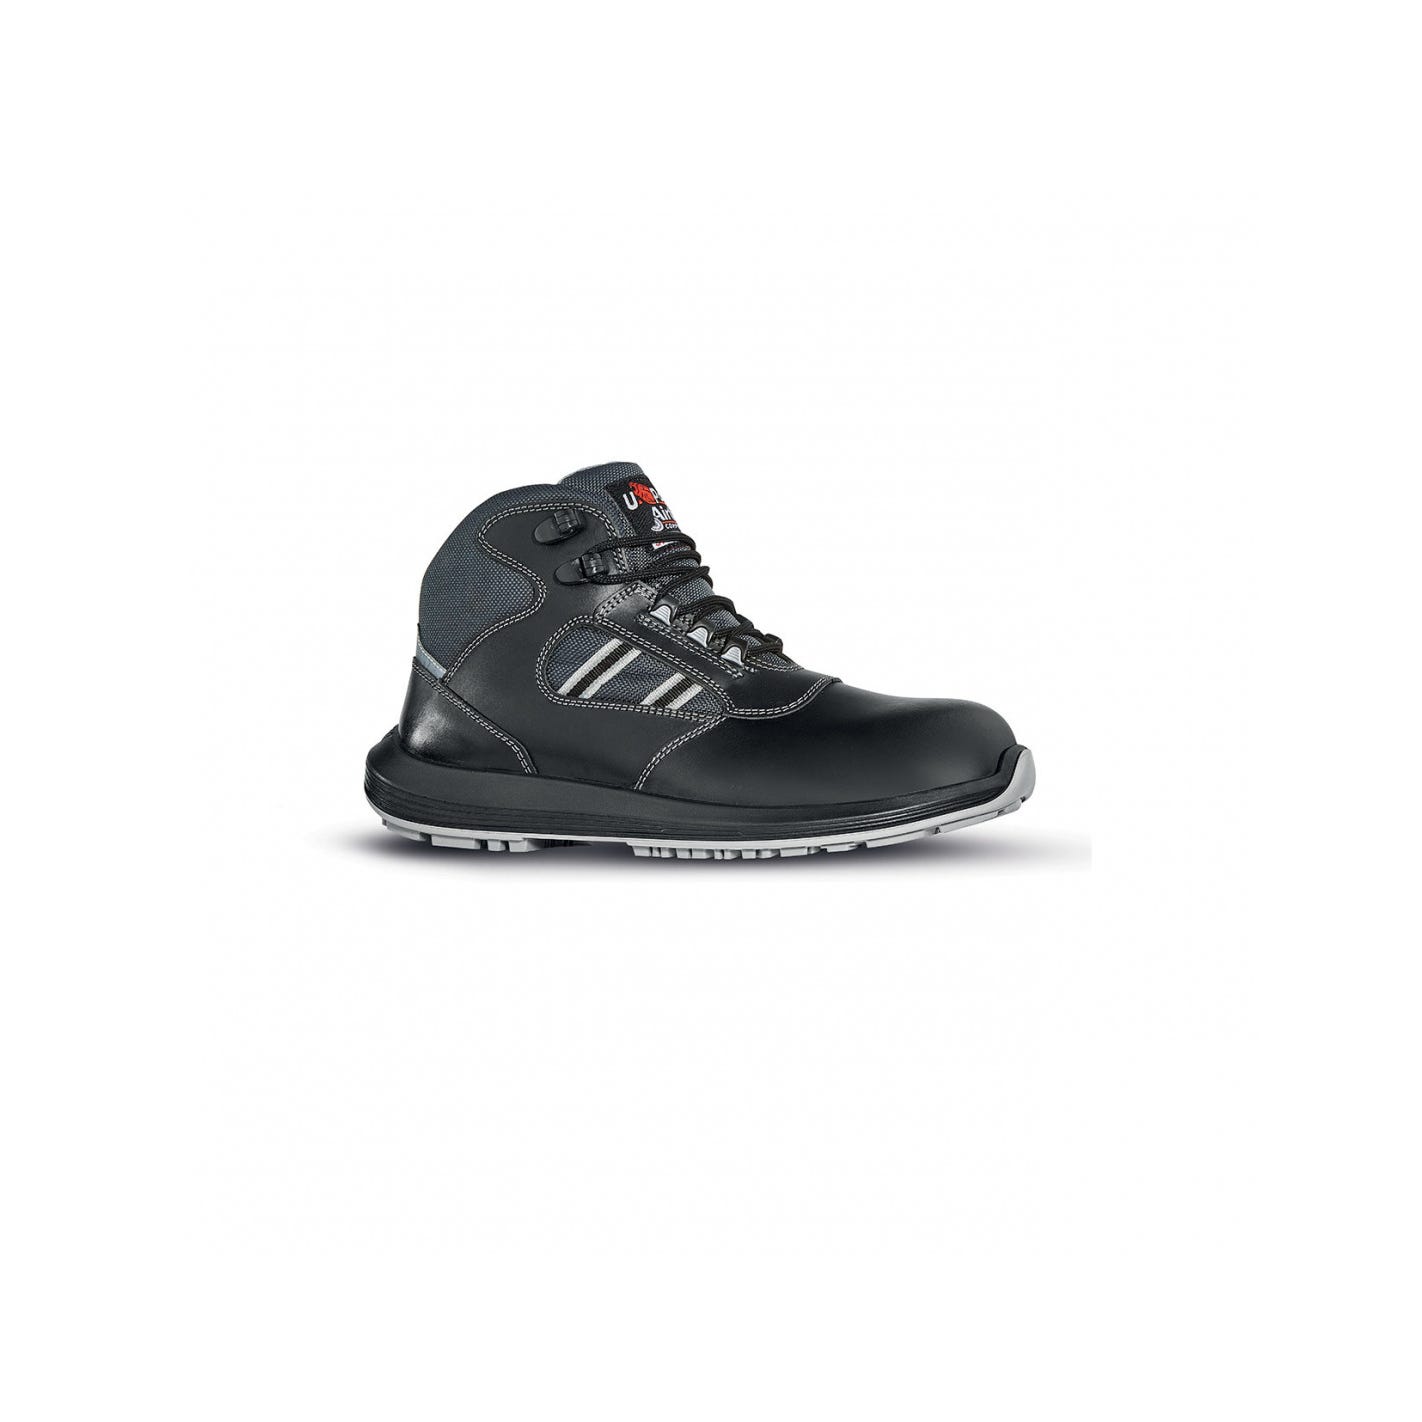 Chaussures de sécurité bottines GIPPO RS S3 SRC | RR10254 - Upower 0